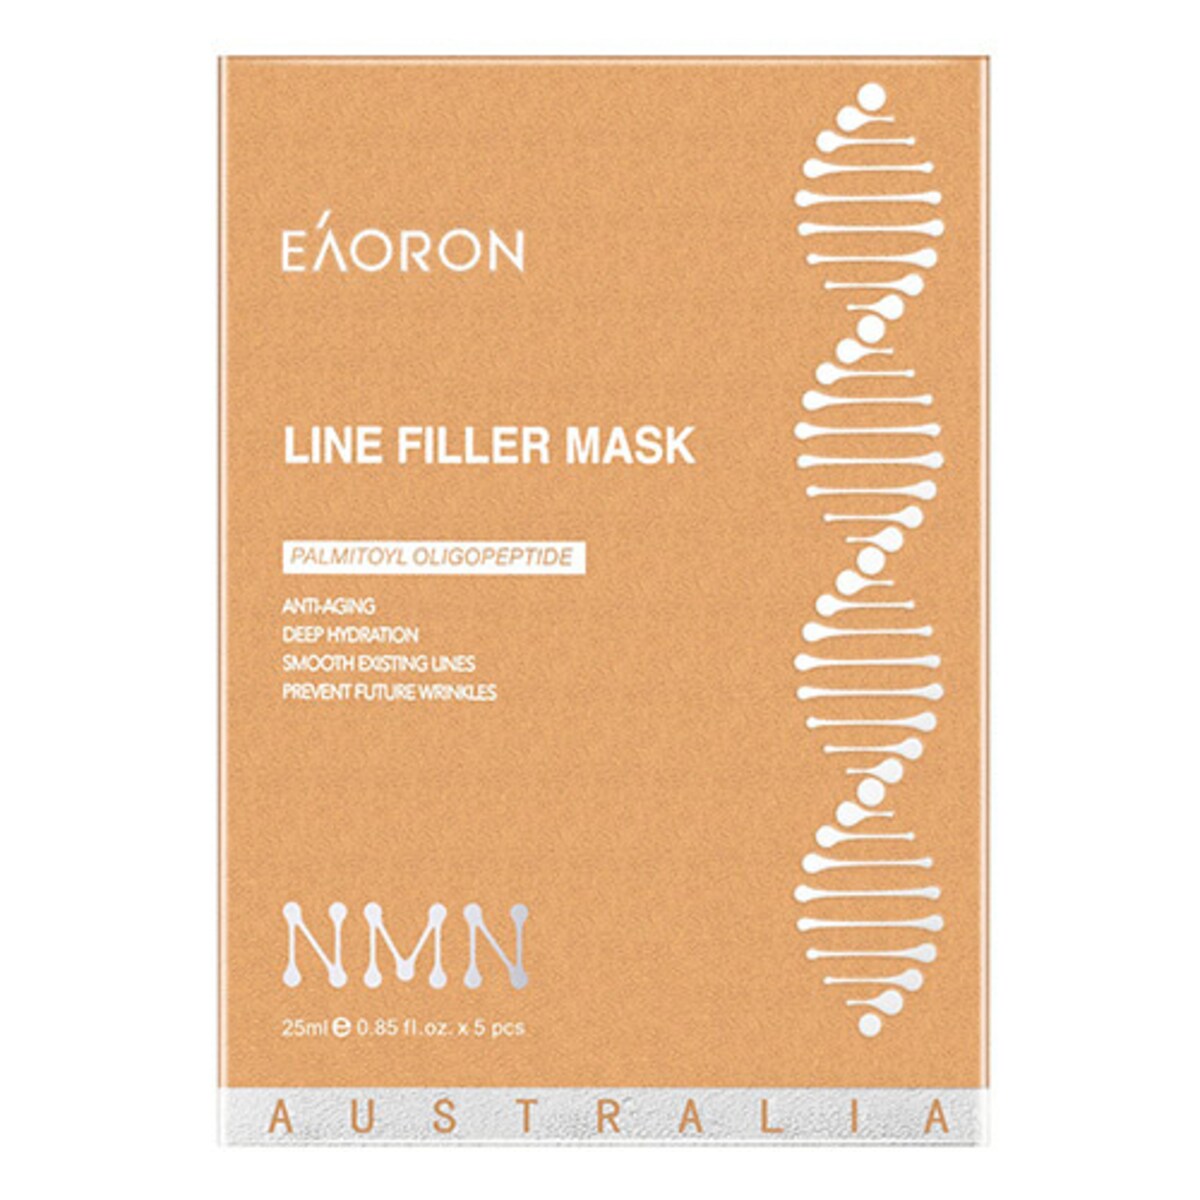 Eaoron Line Filler Face Mask 25ml x 5 Pack